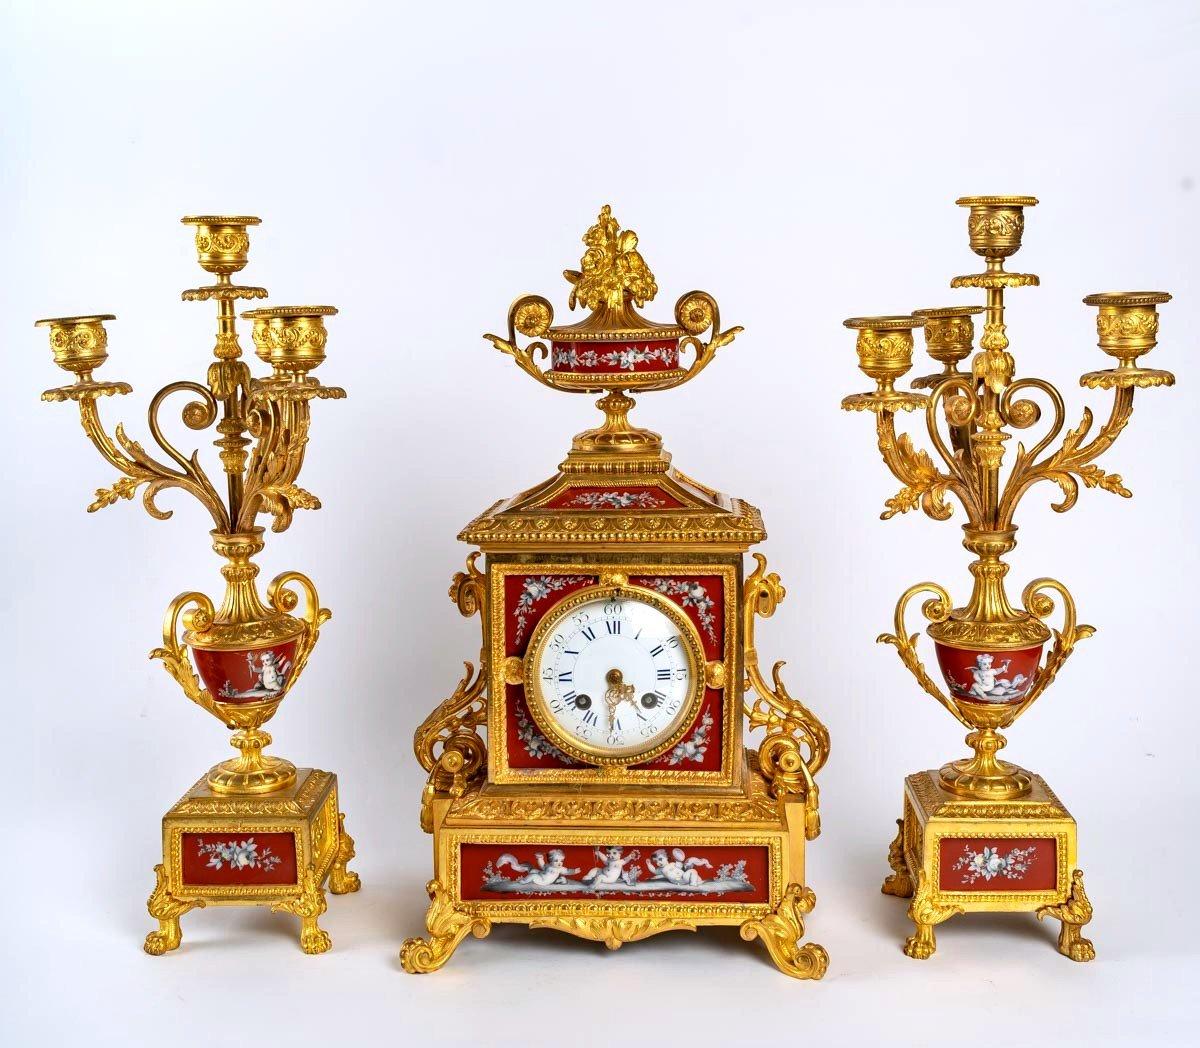 Fireplace set, Napoleon III period
Bronze mantelpiece and enamelled porcelain plate, Napoleon III period
Measures: Clock - H: 43 cm, W: 24 cm, D: 16 cm
Candlestick - H: 42 cm, W: 20 cm, D: 17 cm.
   